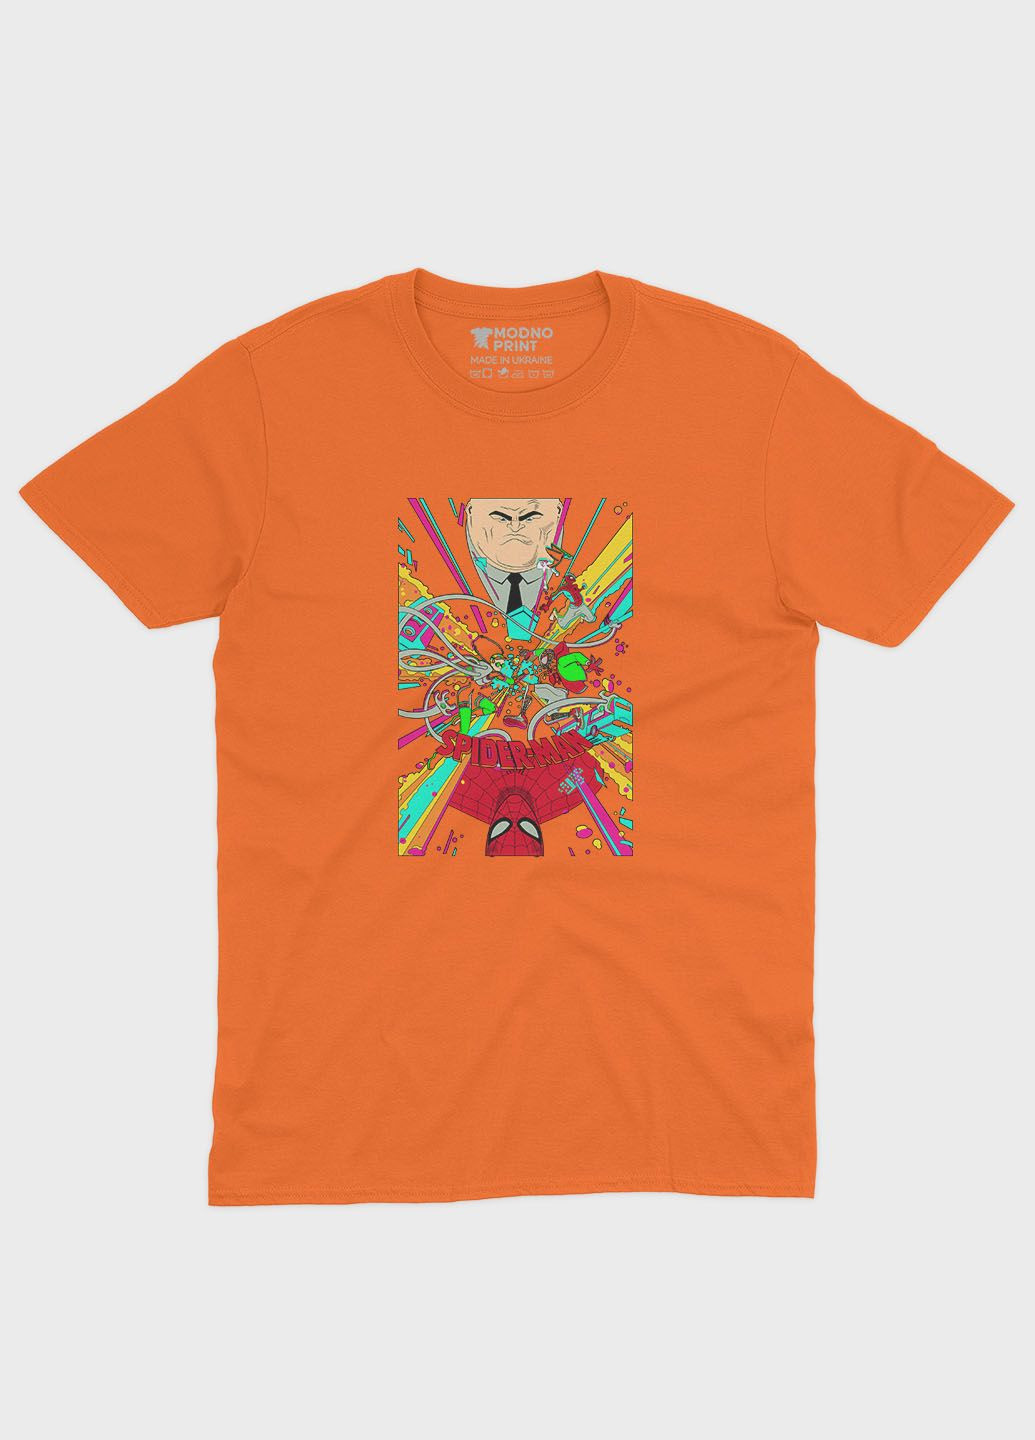 Помаранчева демісезонна футболка для хлопчика з принтом супергероя - людина-павук (ts001-1-ora-006-014-022-b) Modno